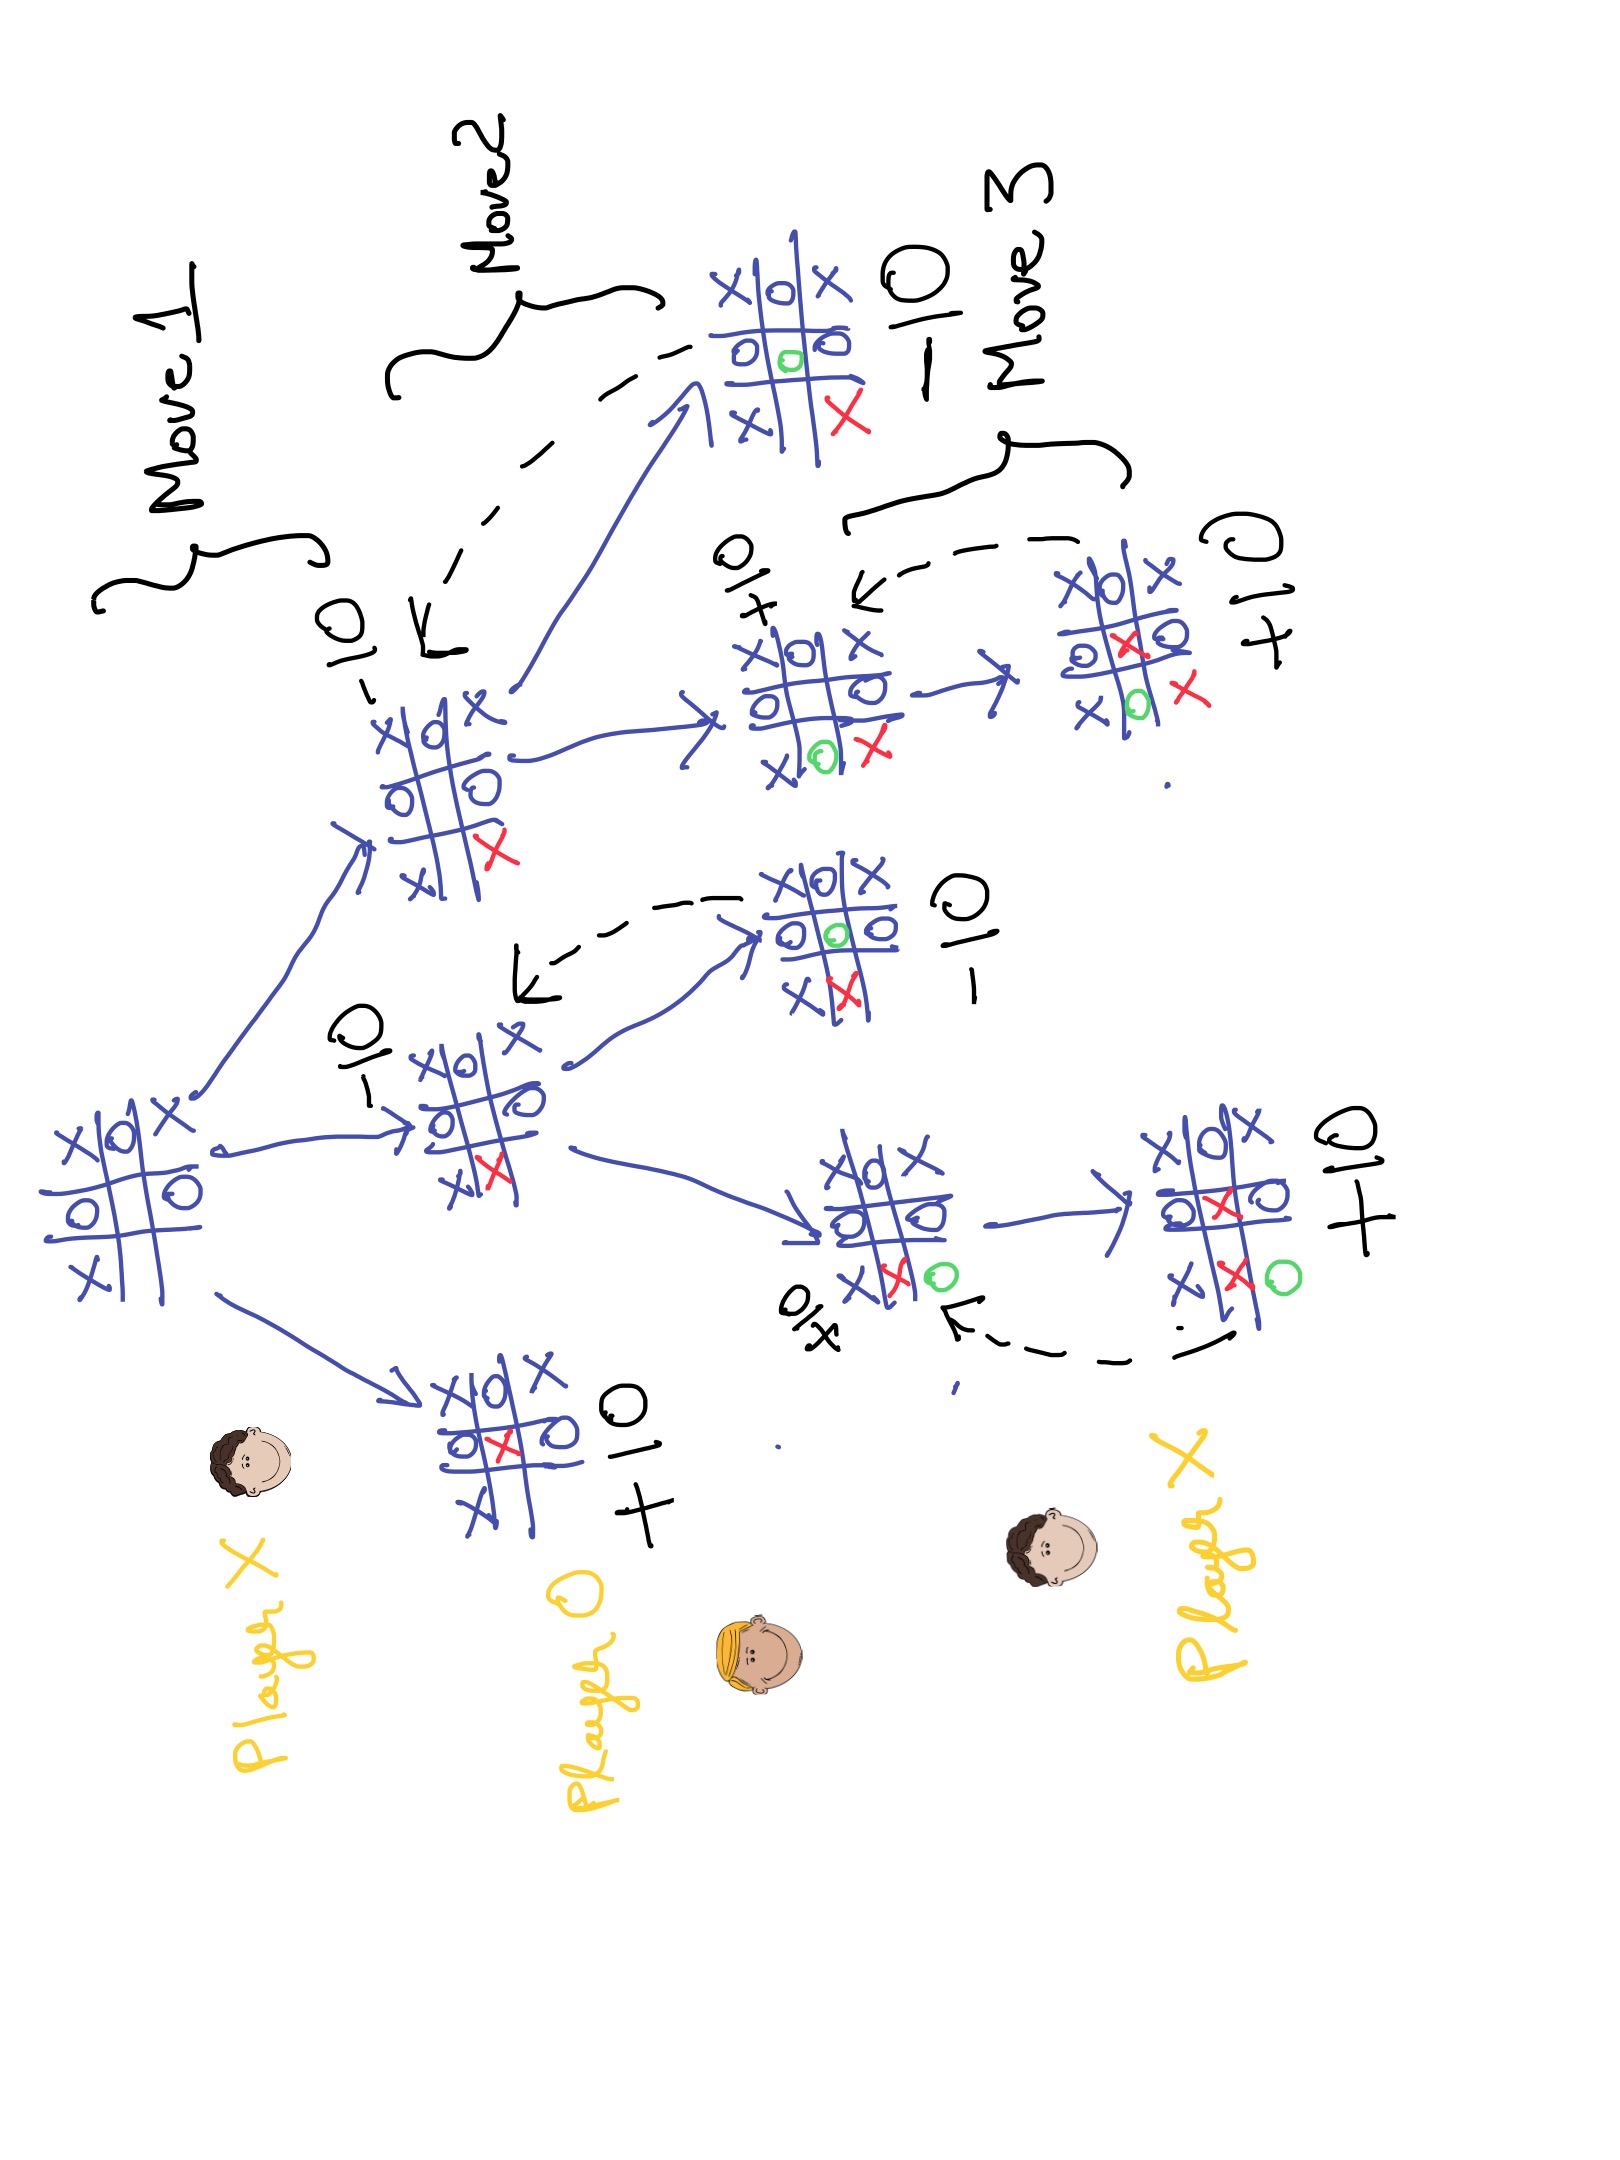 How Minimax Algorithm Works In Tic Tac Toe, by Jaspreetsinghjassi